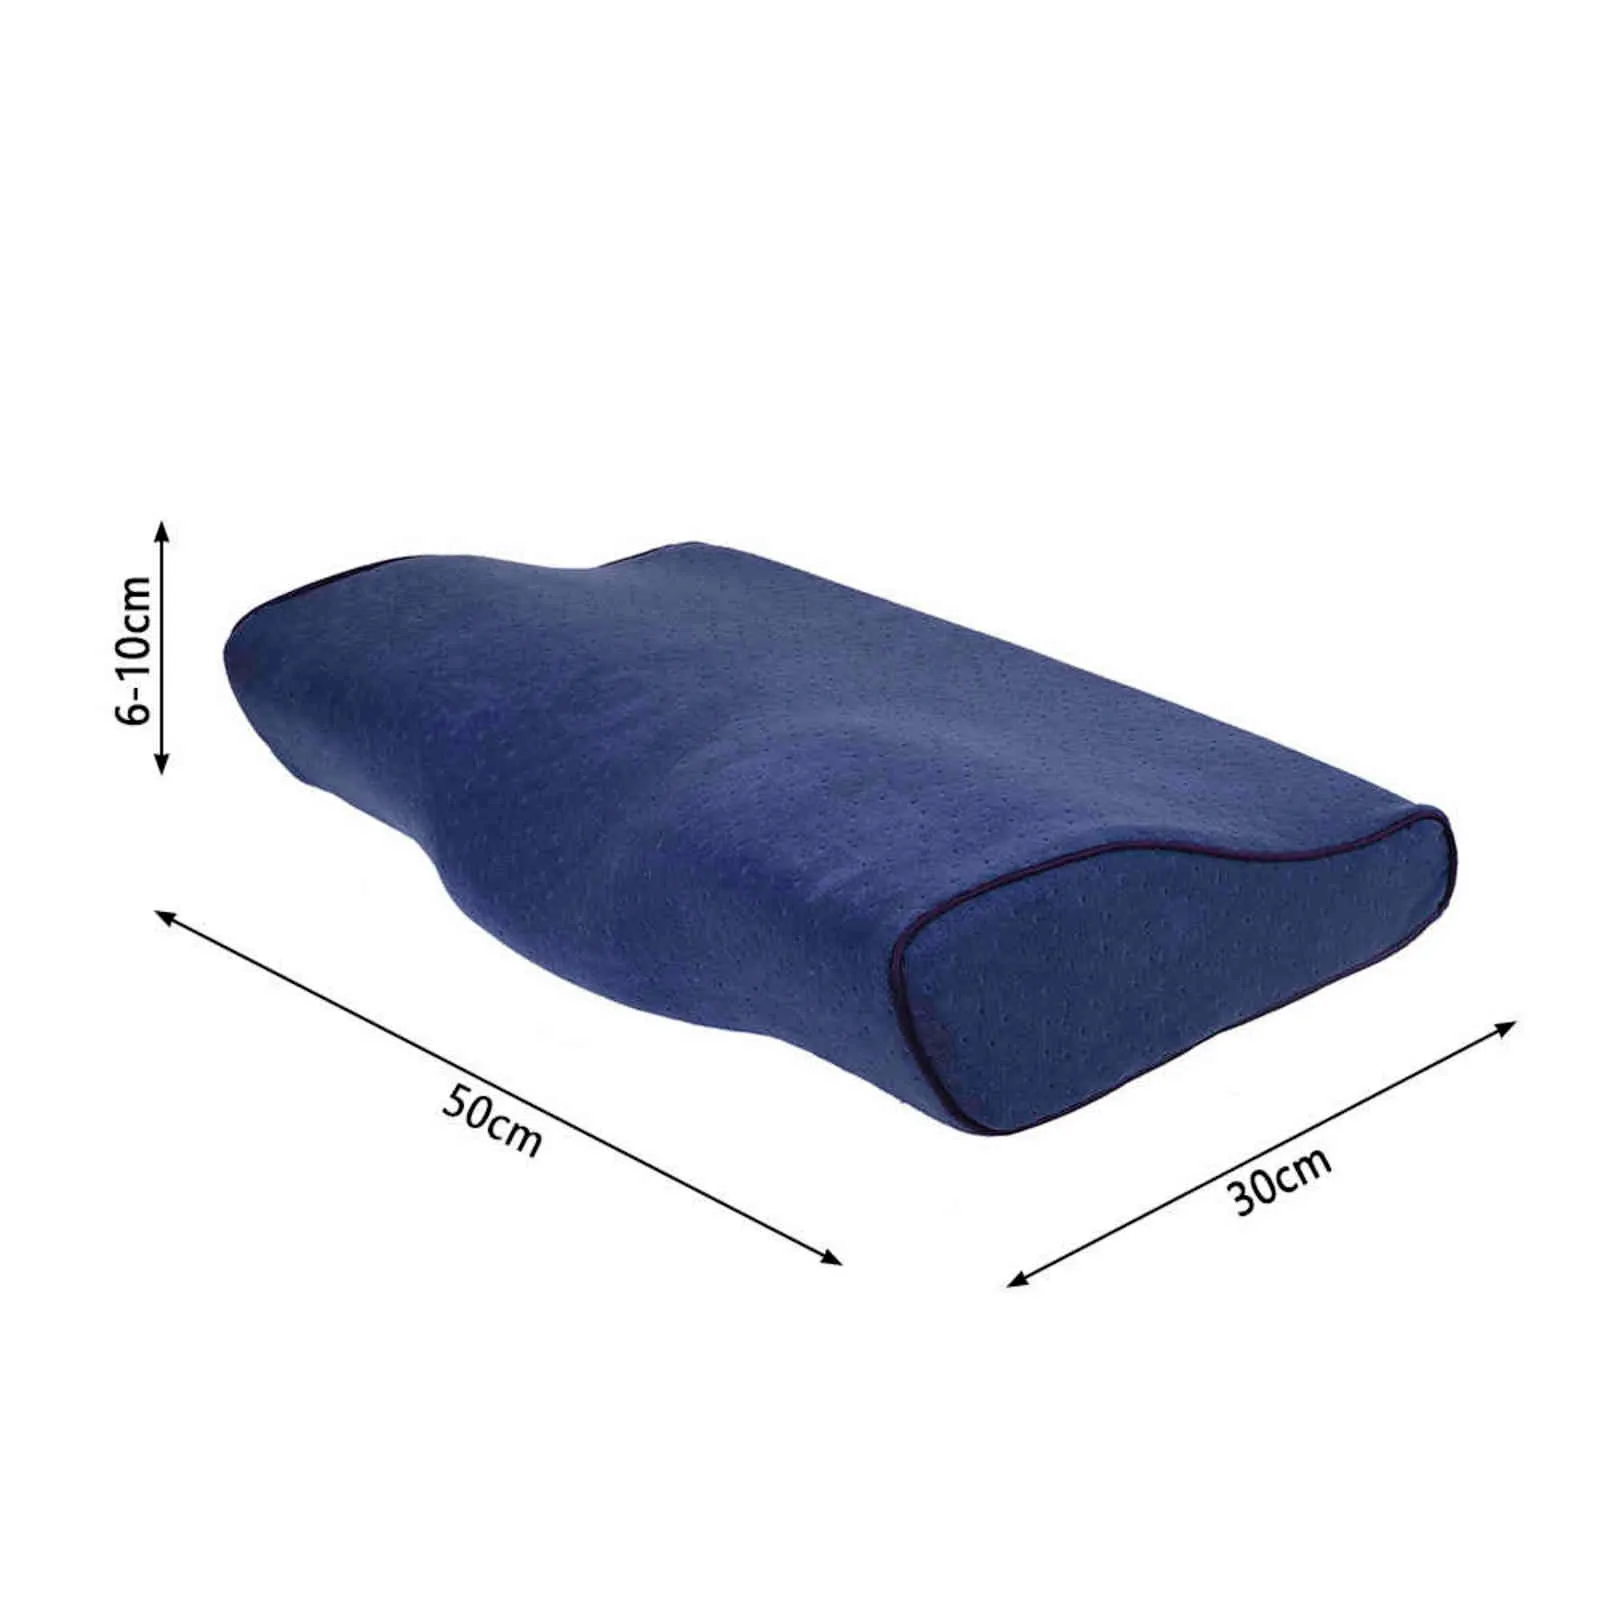 Cuscino di memoria ortopedica il dolore protezione del collo protezione del rimbalzo lento cuscino cuscinetto cuscino cuscinetto cervicale cuscino cuscine